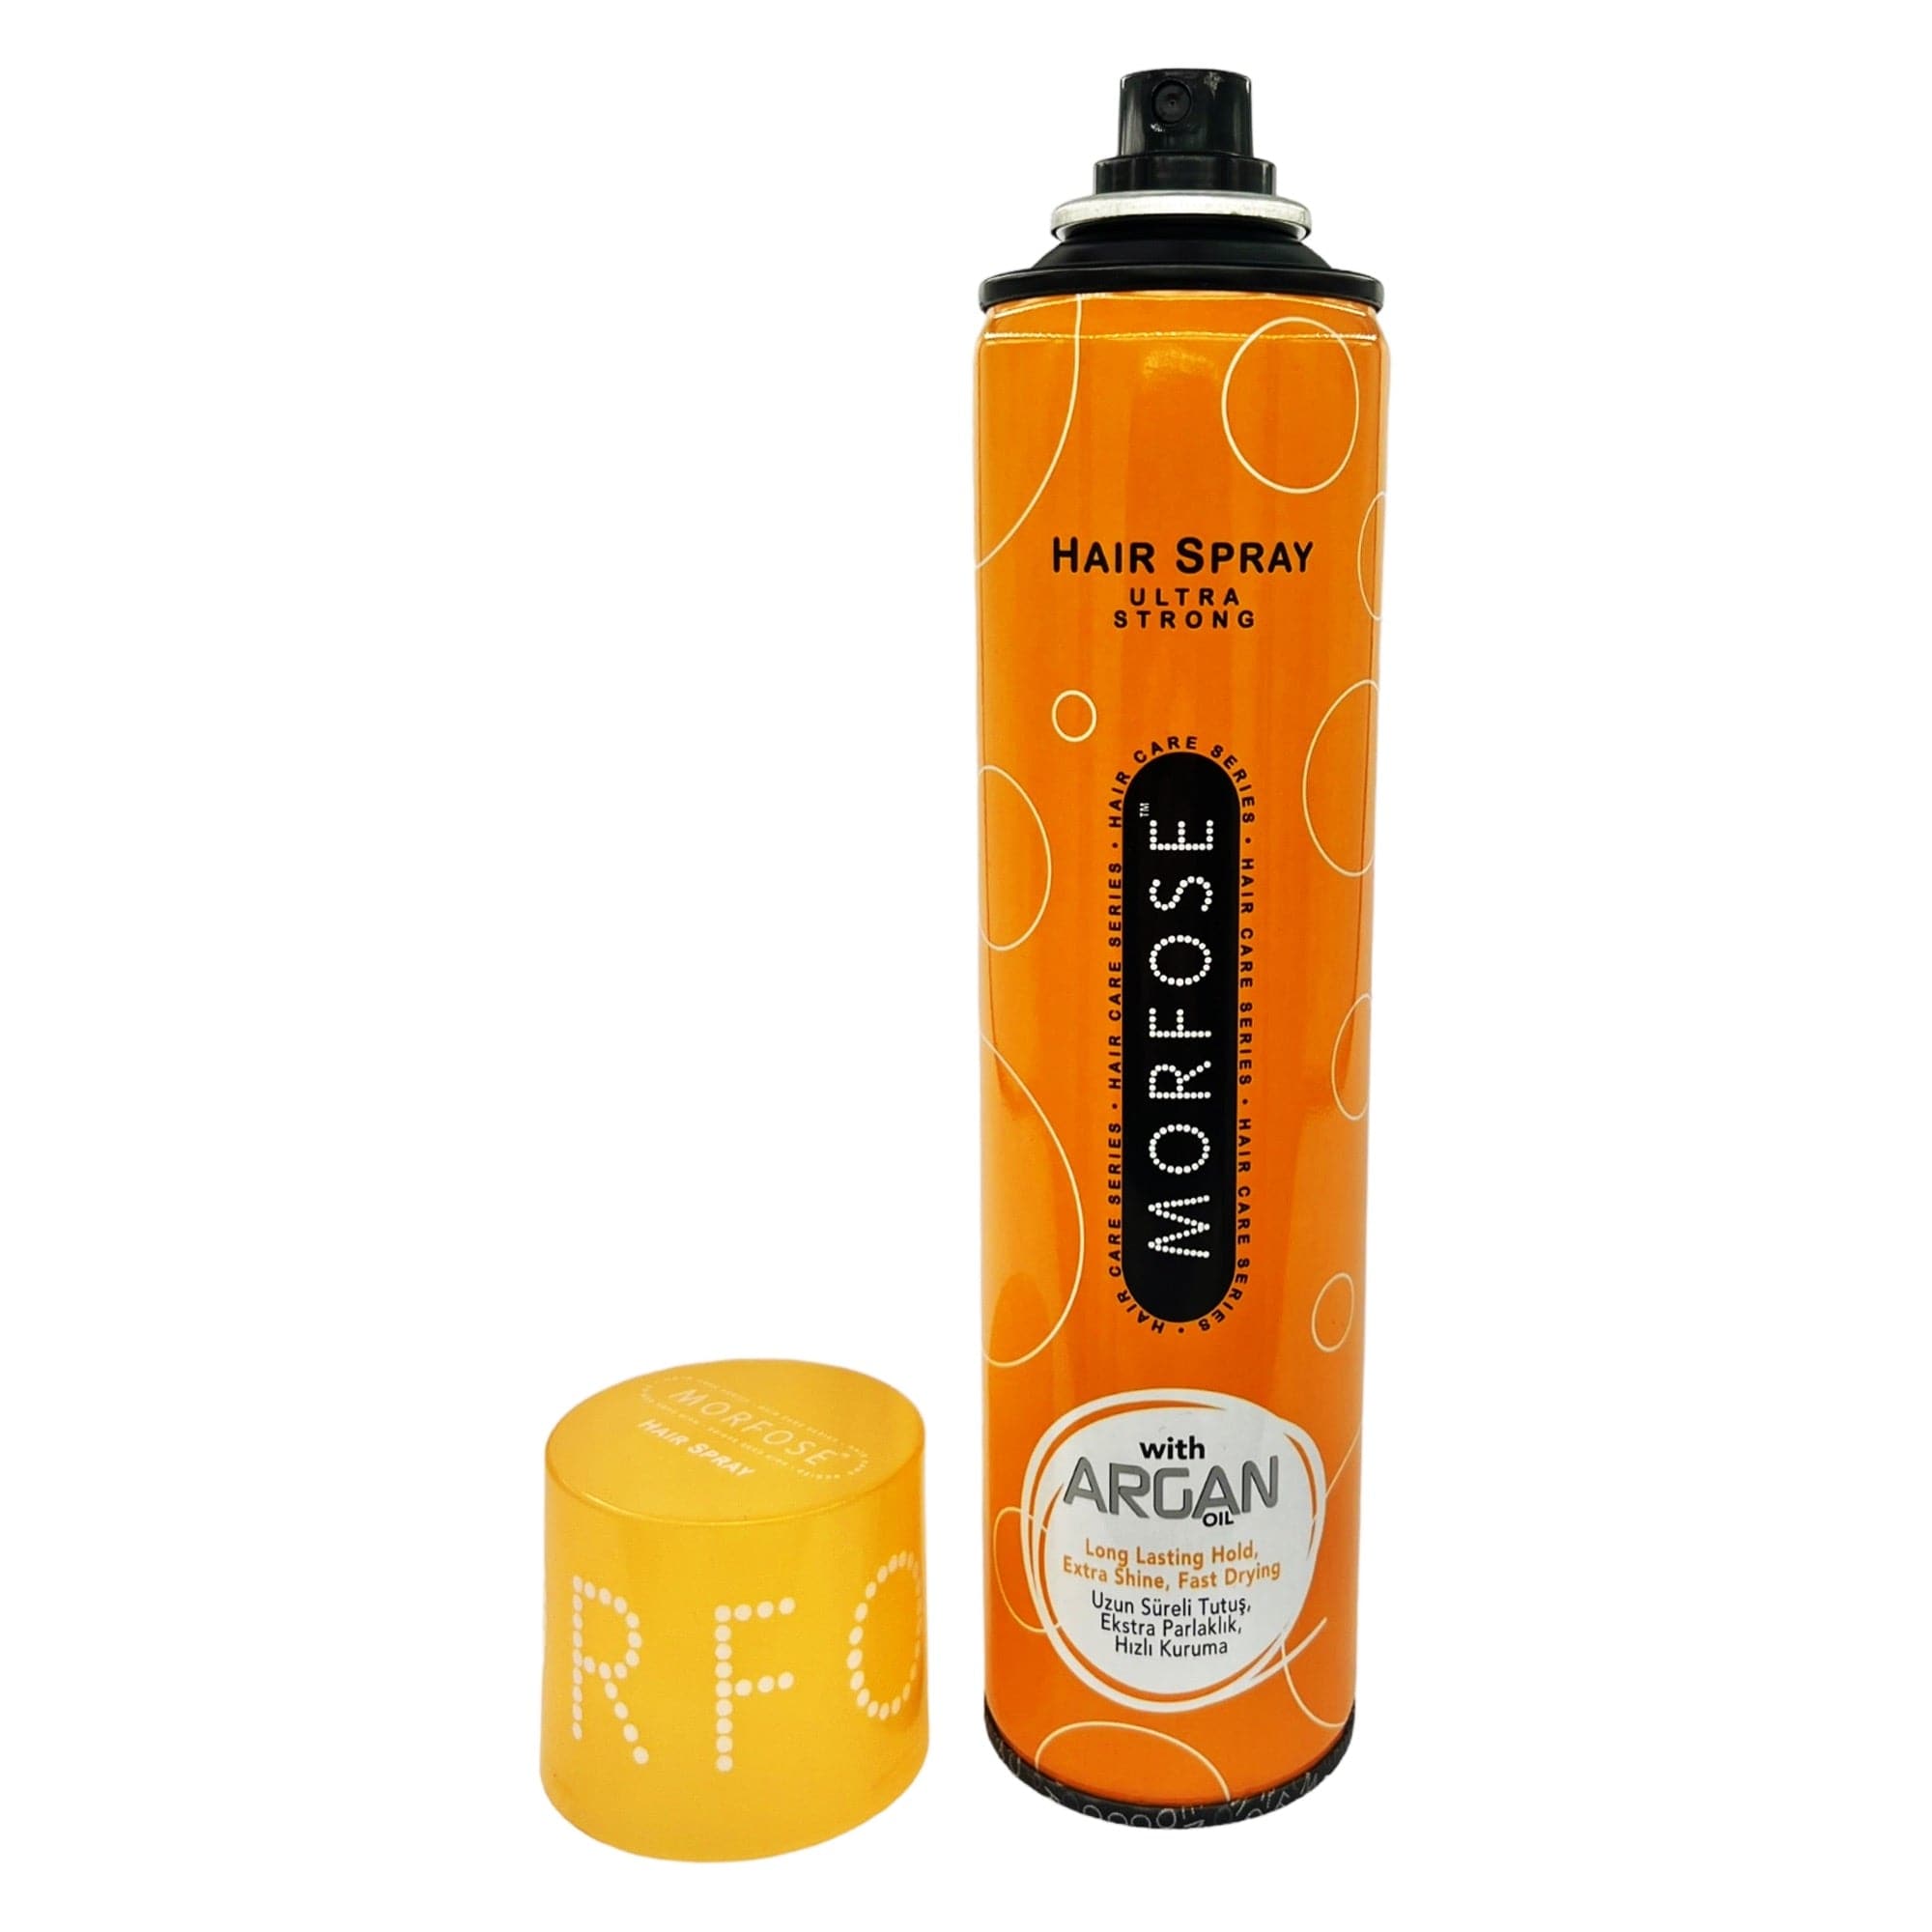 Morfose - Hair Spray Ultra Strong with Argan Oil 300ml